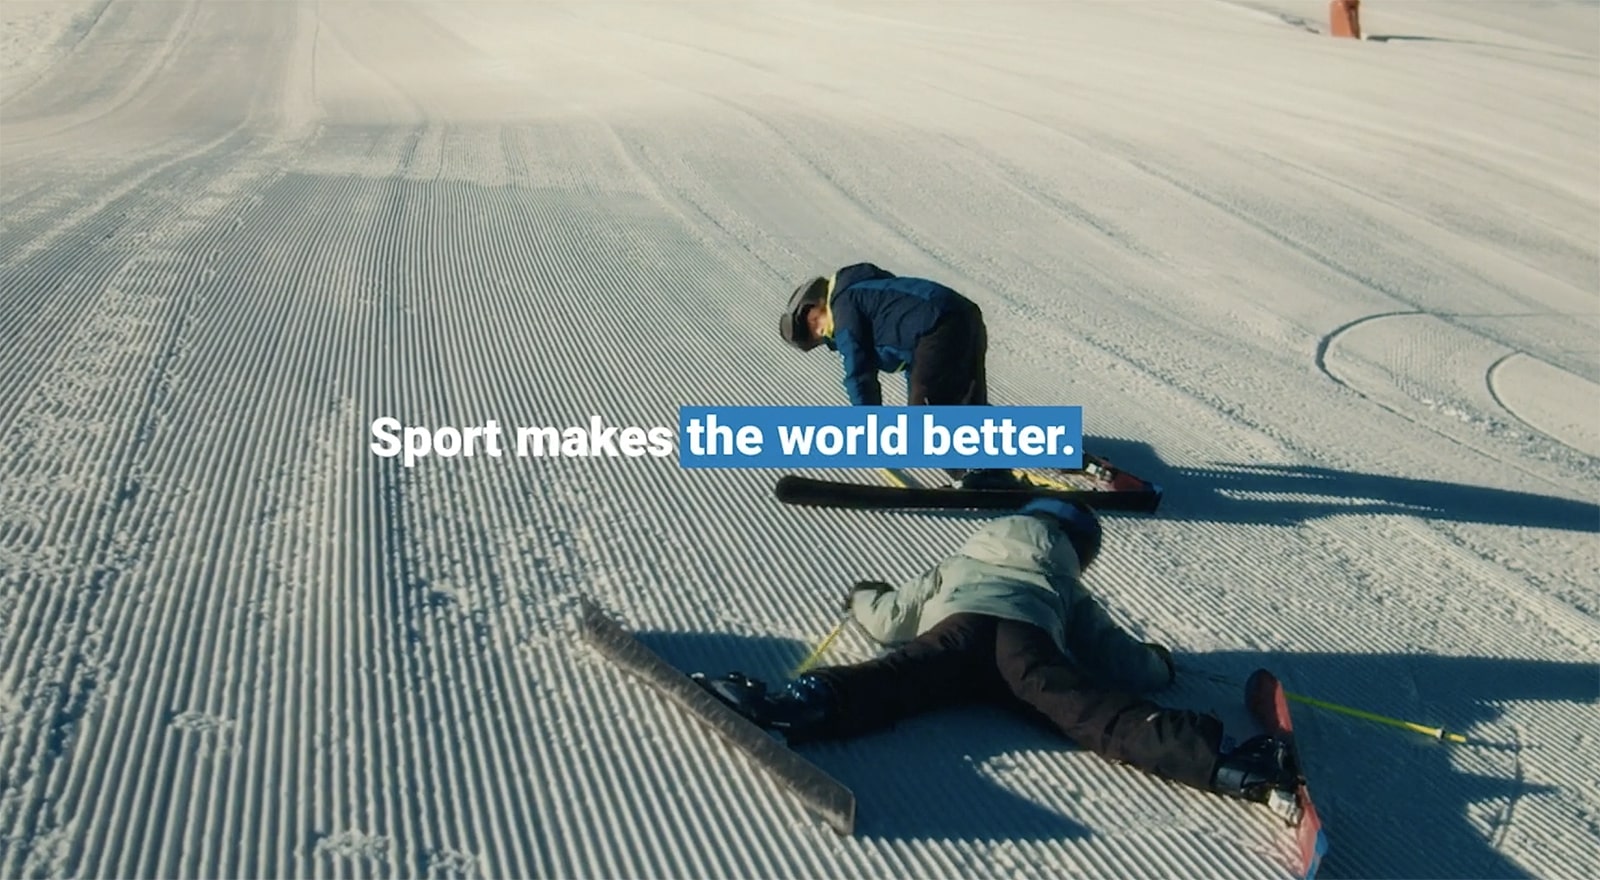 Decathlon: Sport makes the world better